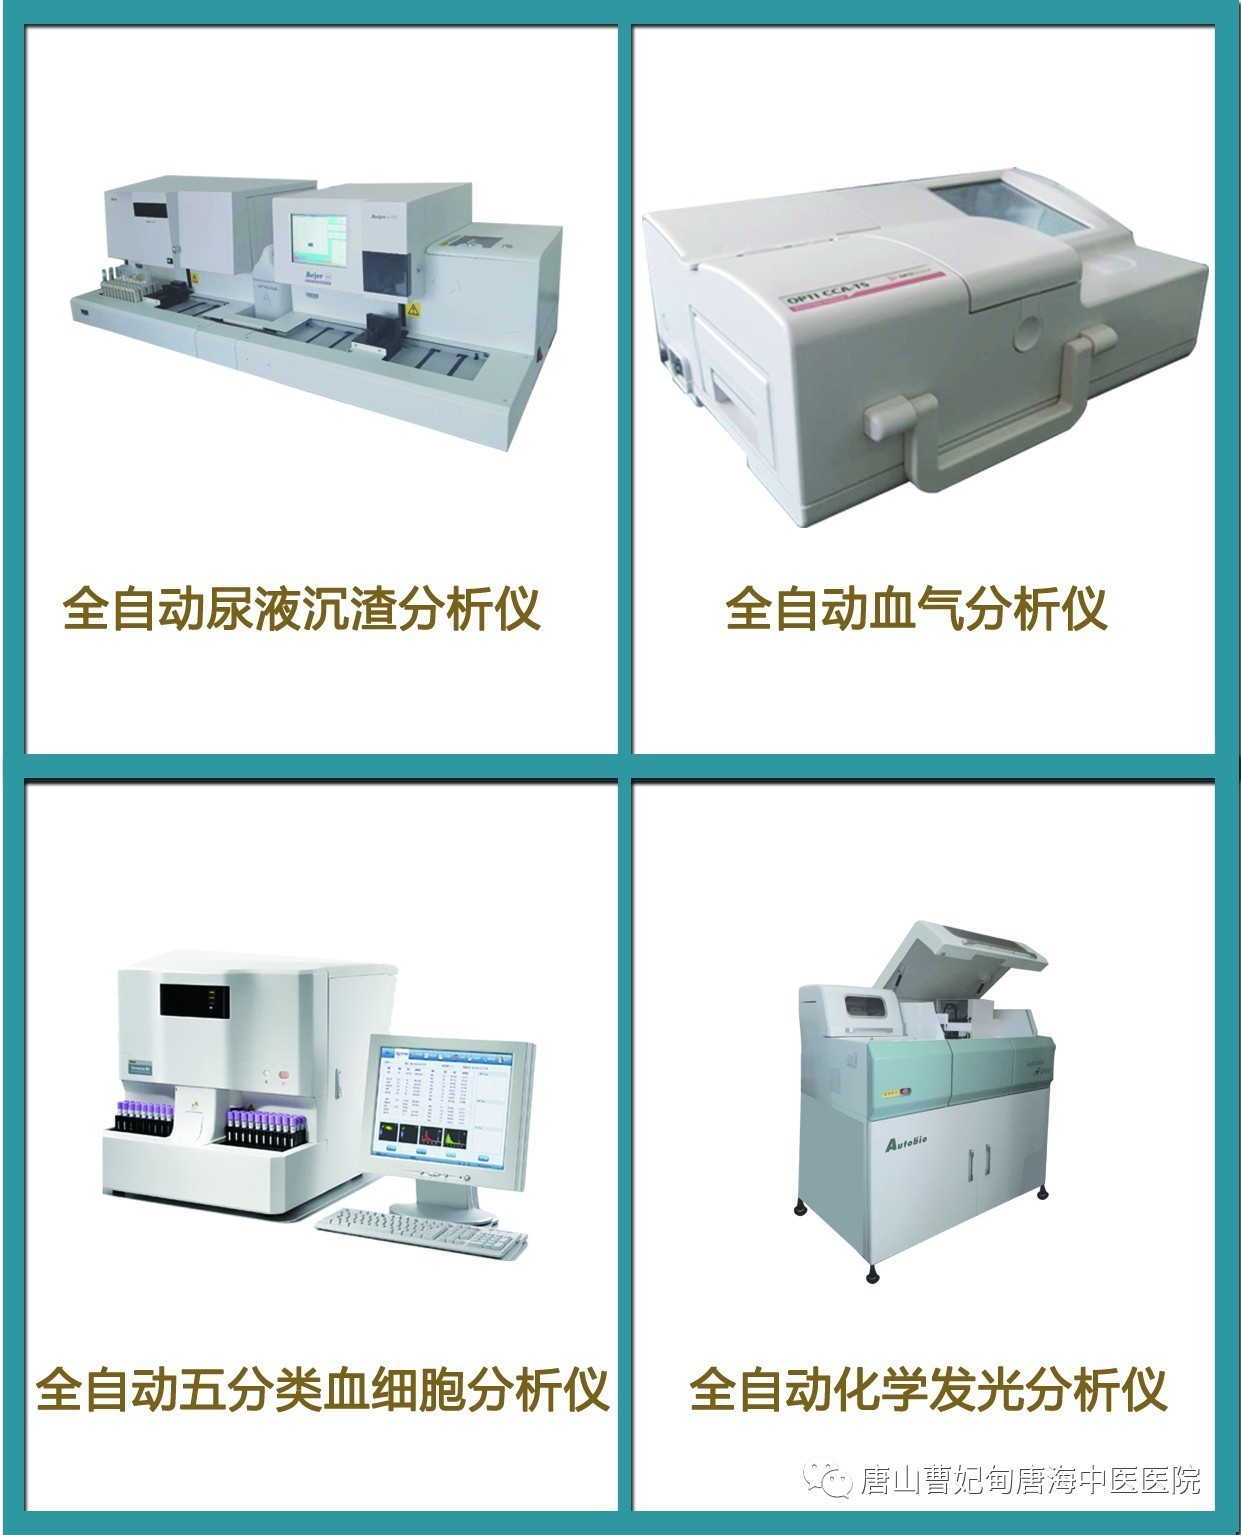 检验科拥有先进的检验仪器,包括cs1200全自动生化分析仪,安图autolumo